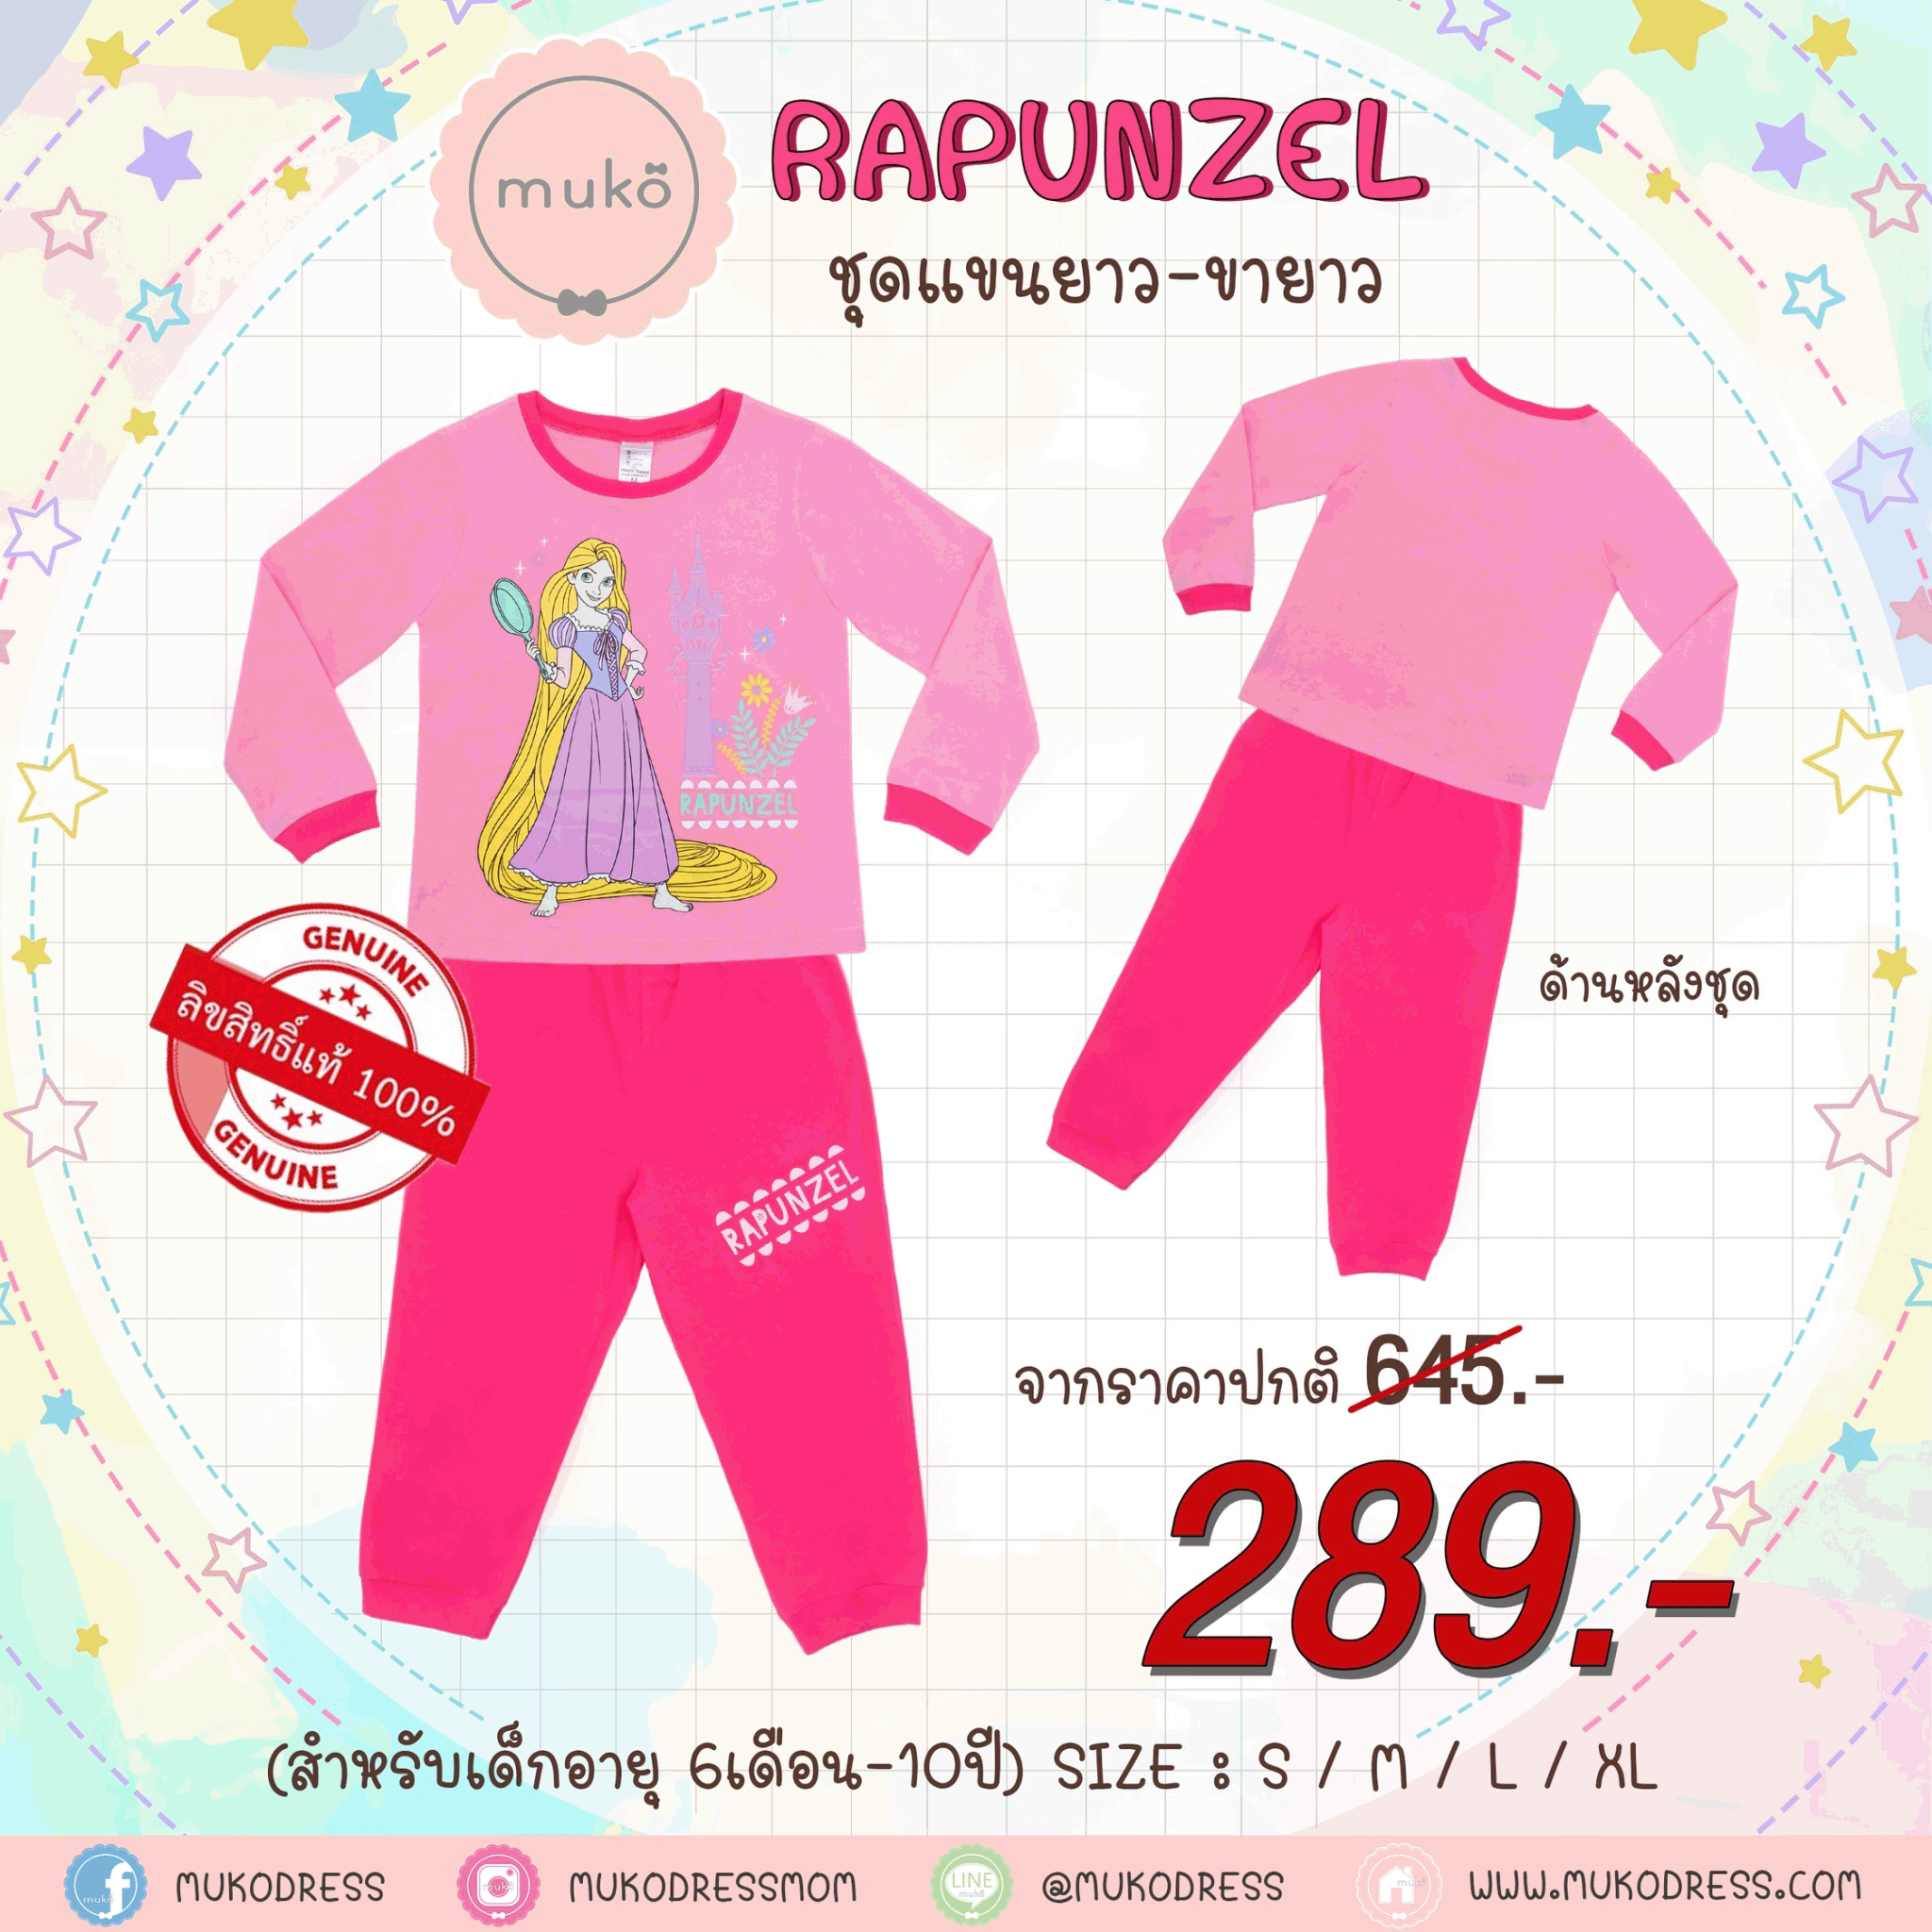 ชุดเด็ก 6-7 ขวบ แขนยาว-ขายาว (Size L) DPC127-10-XL-Pink L ลาย เจ้าหญิงราพันเซล Rapunzel สีชมพู